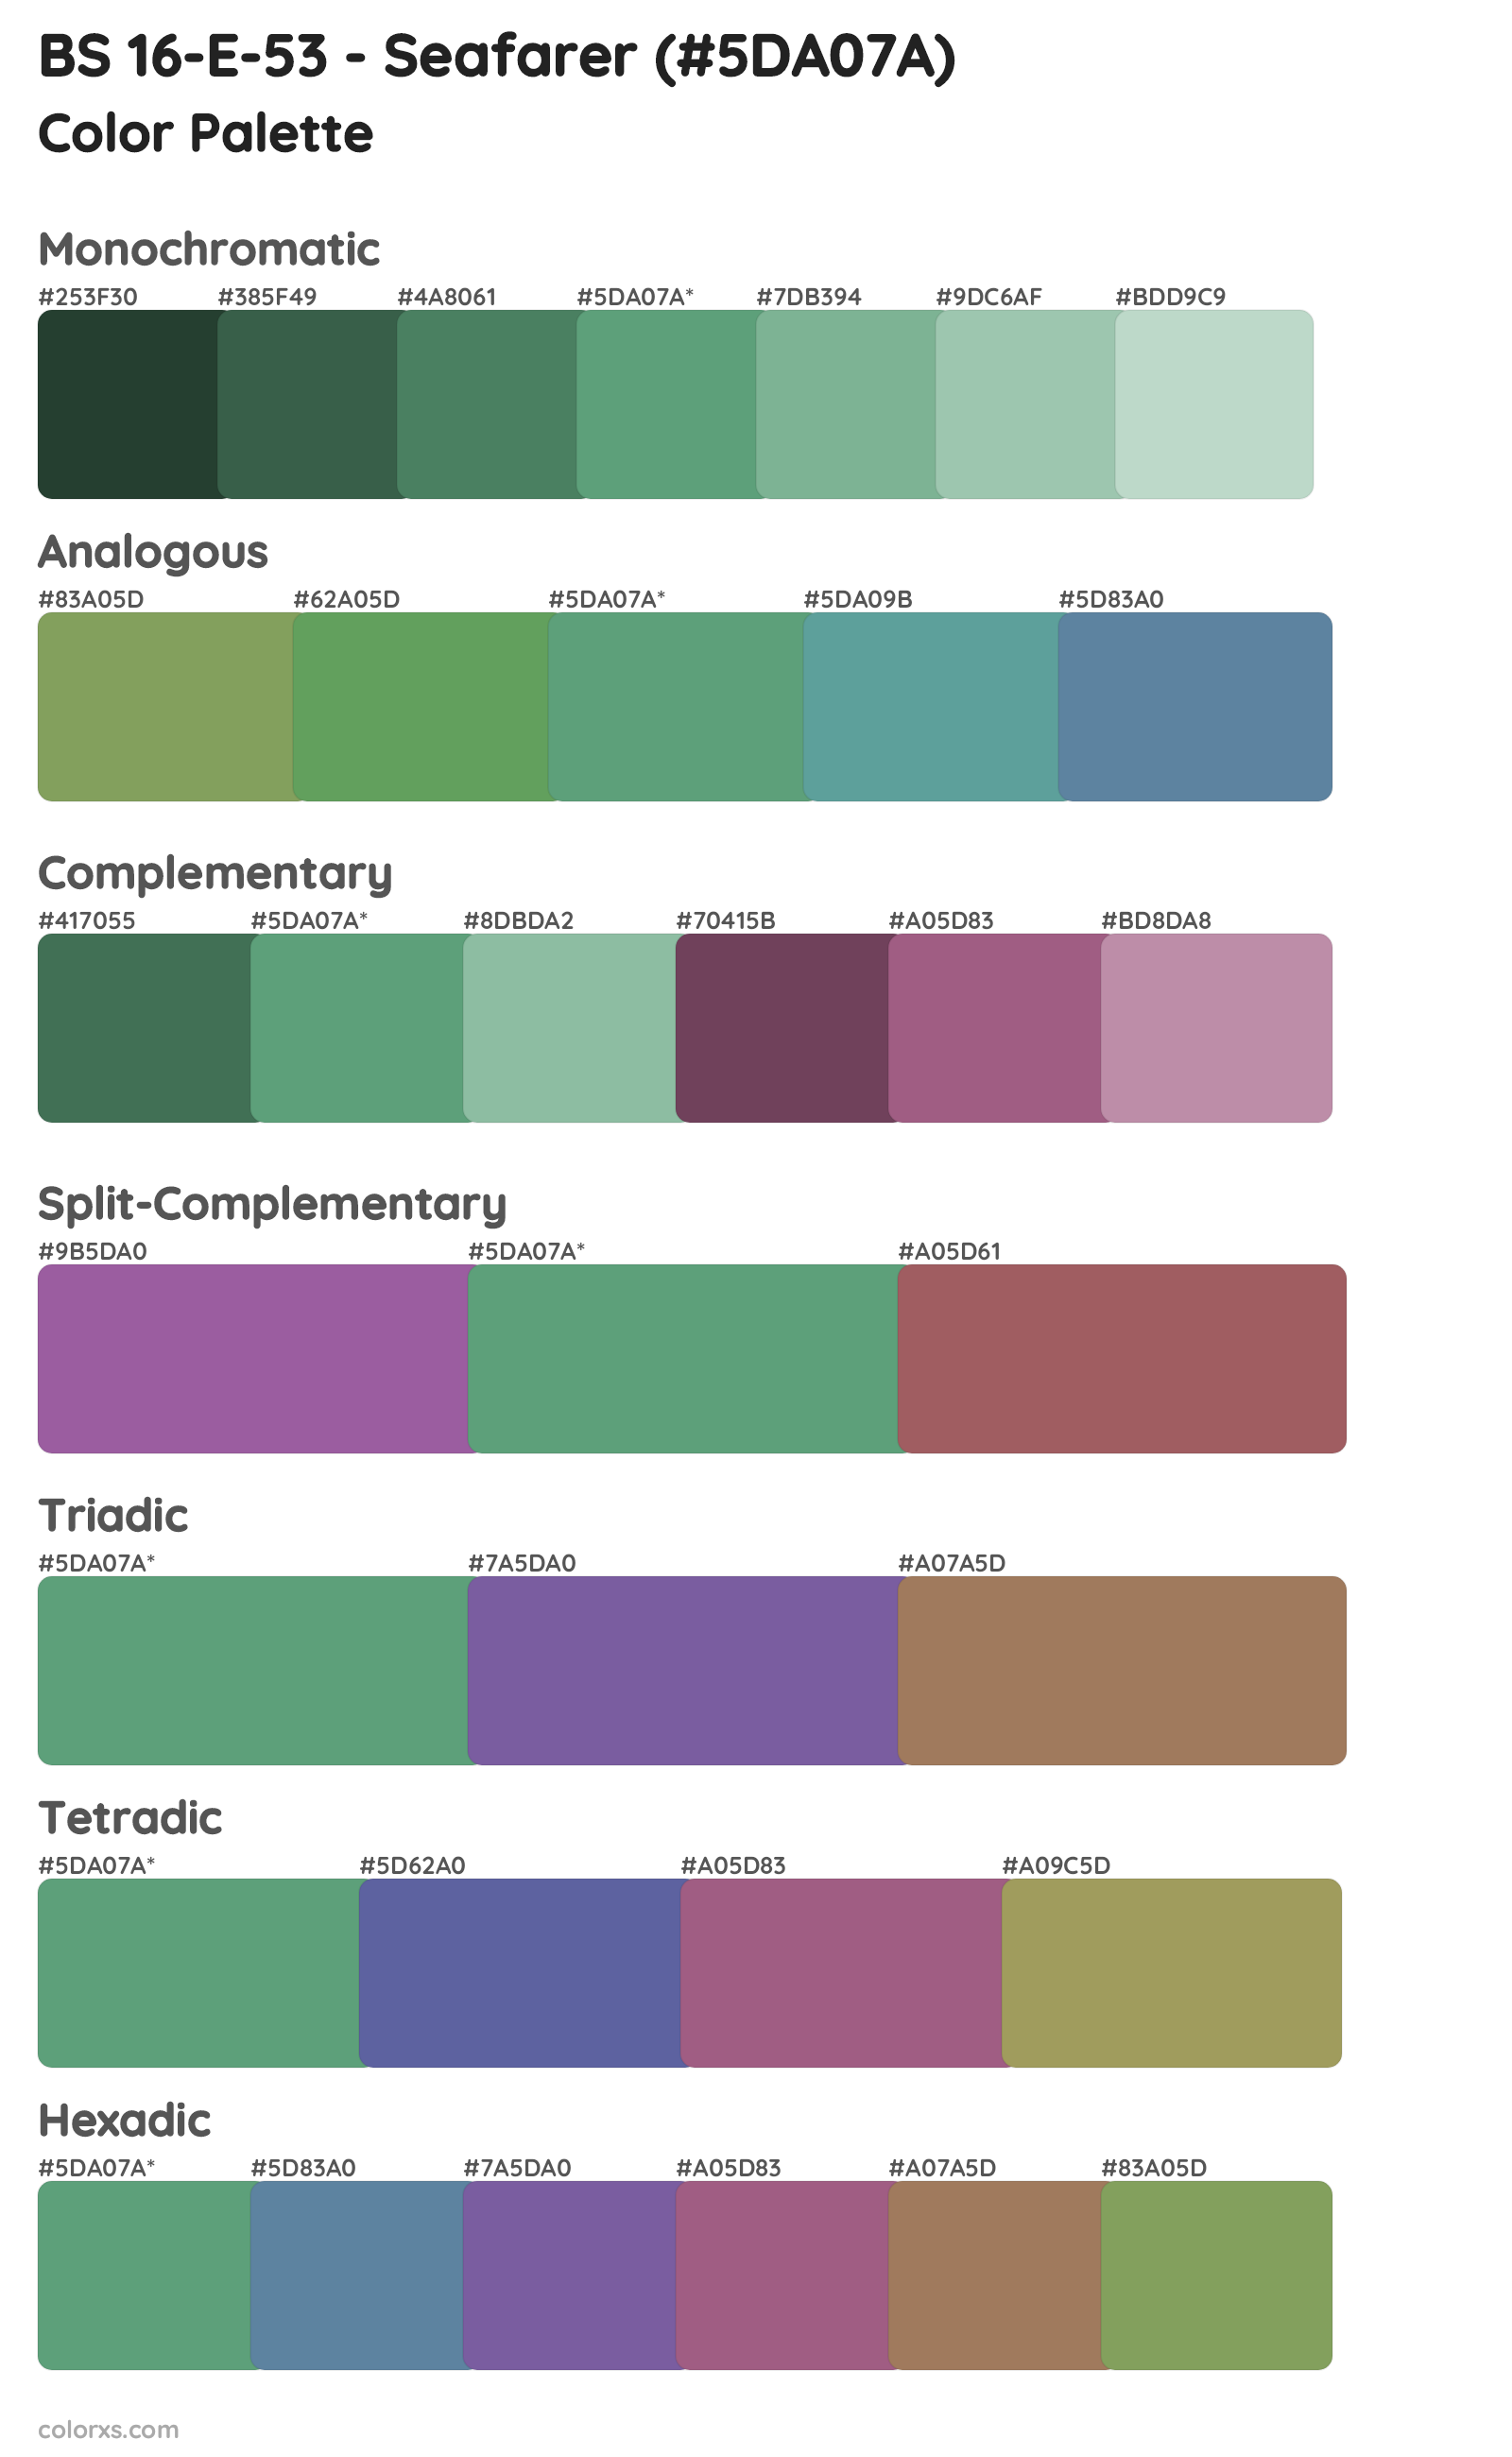 BS 16-E-53 - Seafarer Color Scheme Palettes